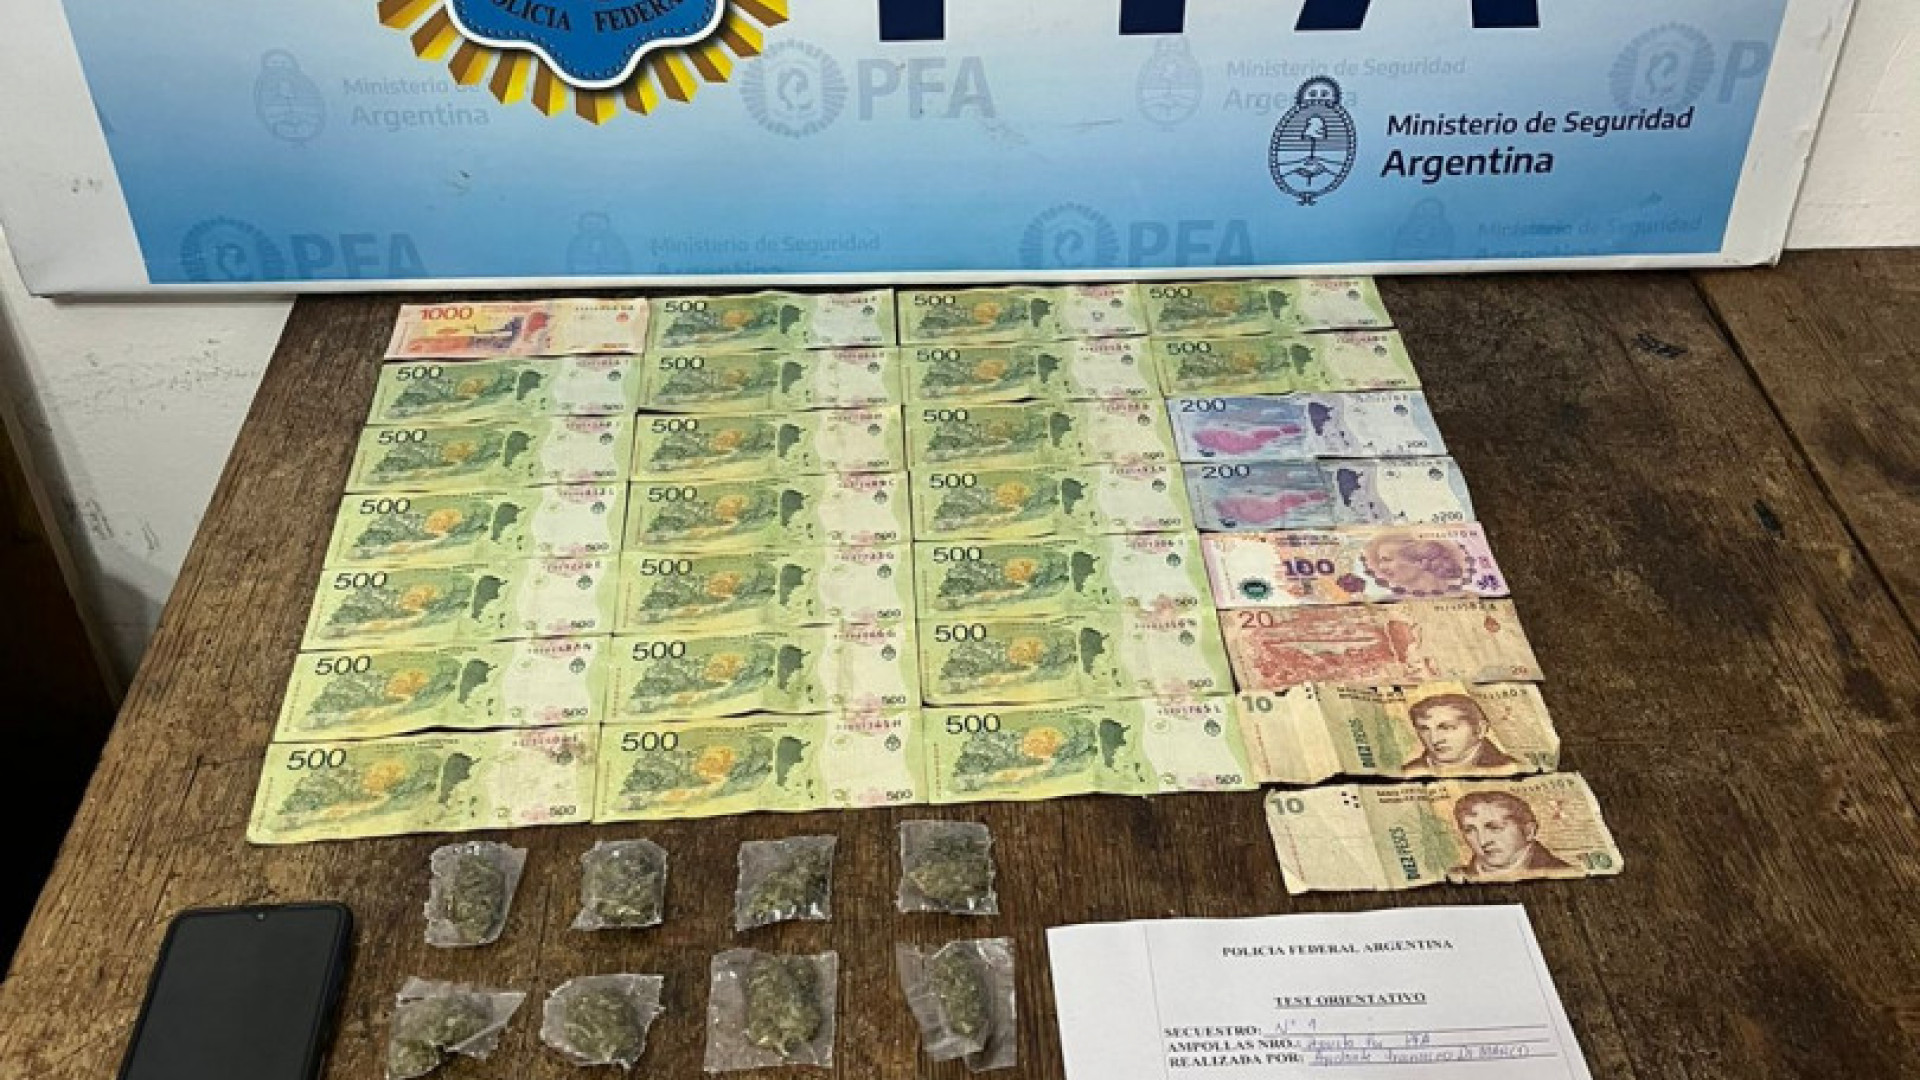 noticiaspuertosantacruz.com.ar - Imagen extraida de: https://argentina.gob.ar/noticias/lollapalloza-la-policia-federal-argentina-detuvo-una-persona-por-vender-droga-en-el